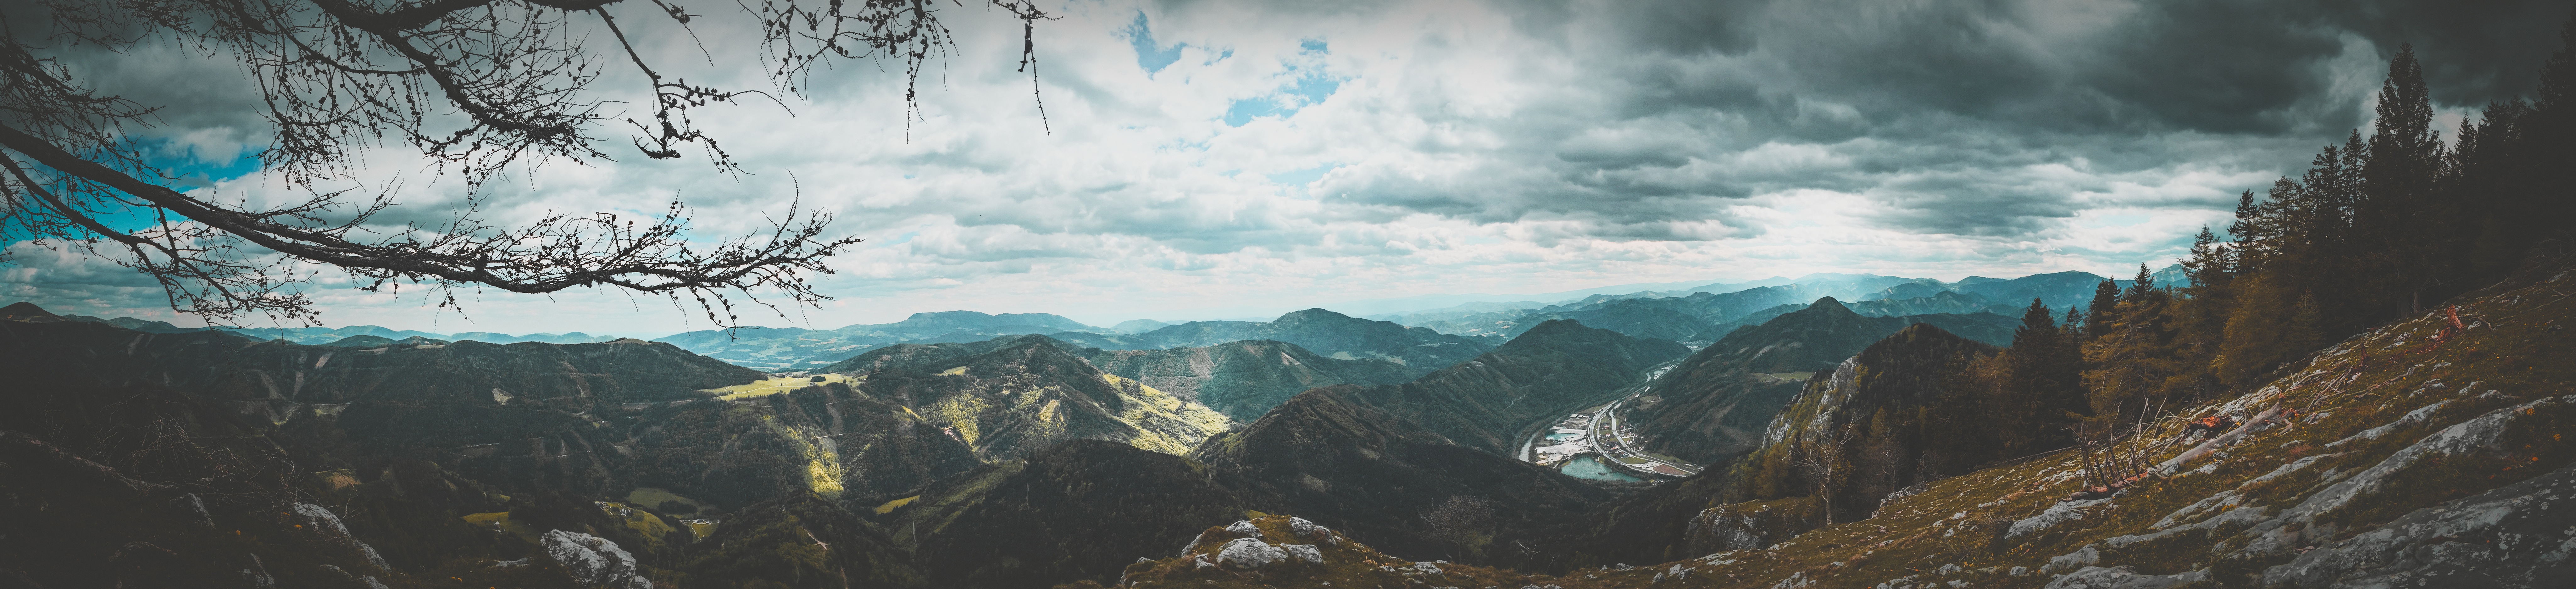 Широкая панорамная фотография с изображением гор